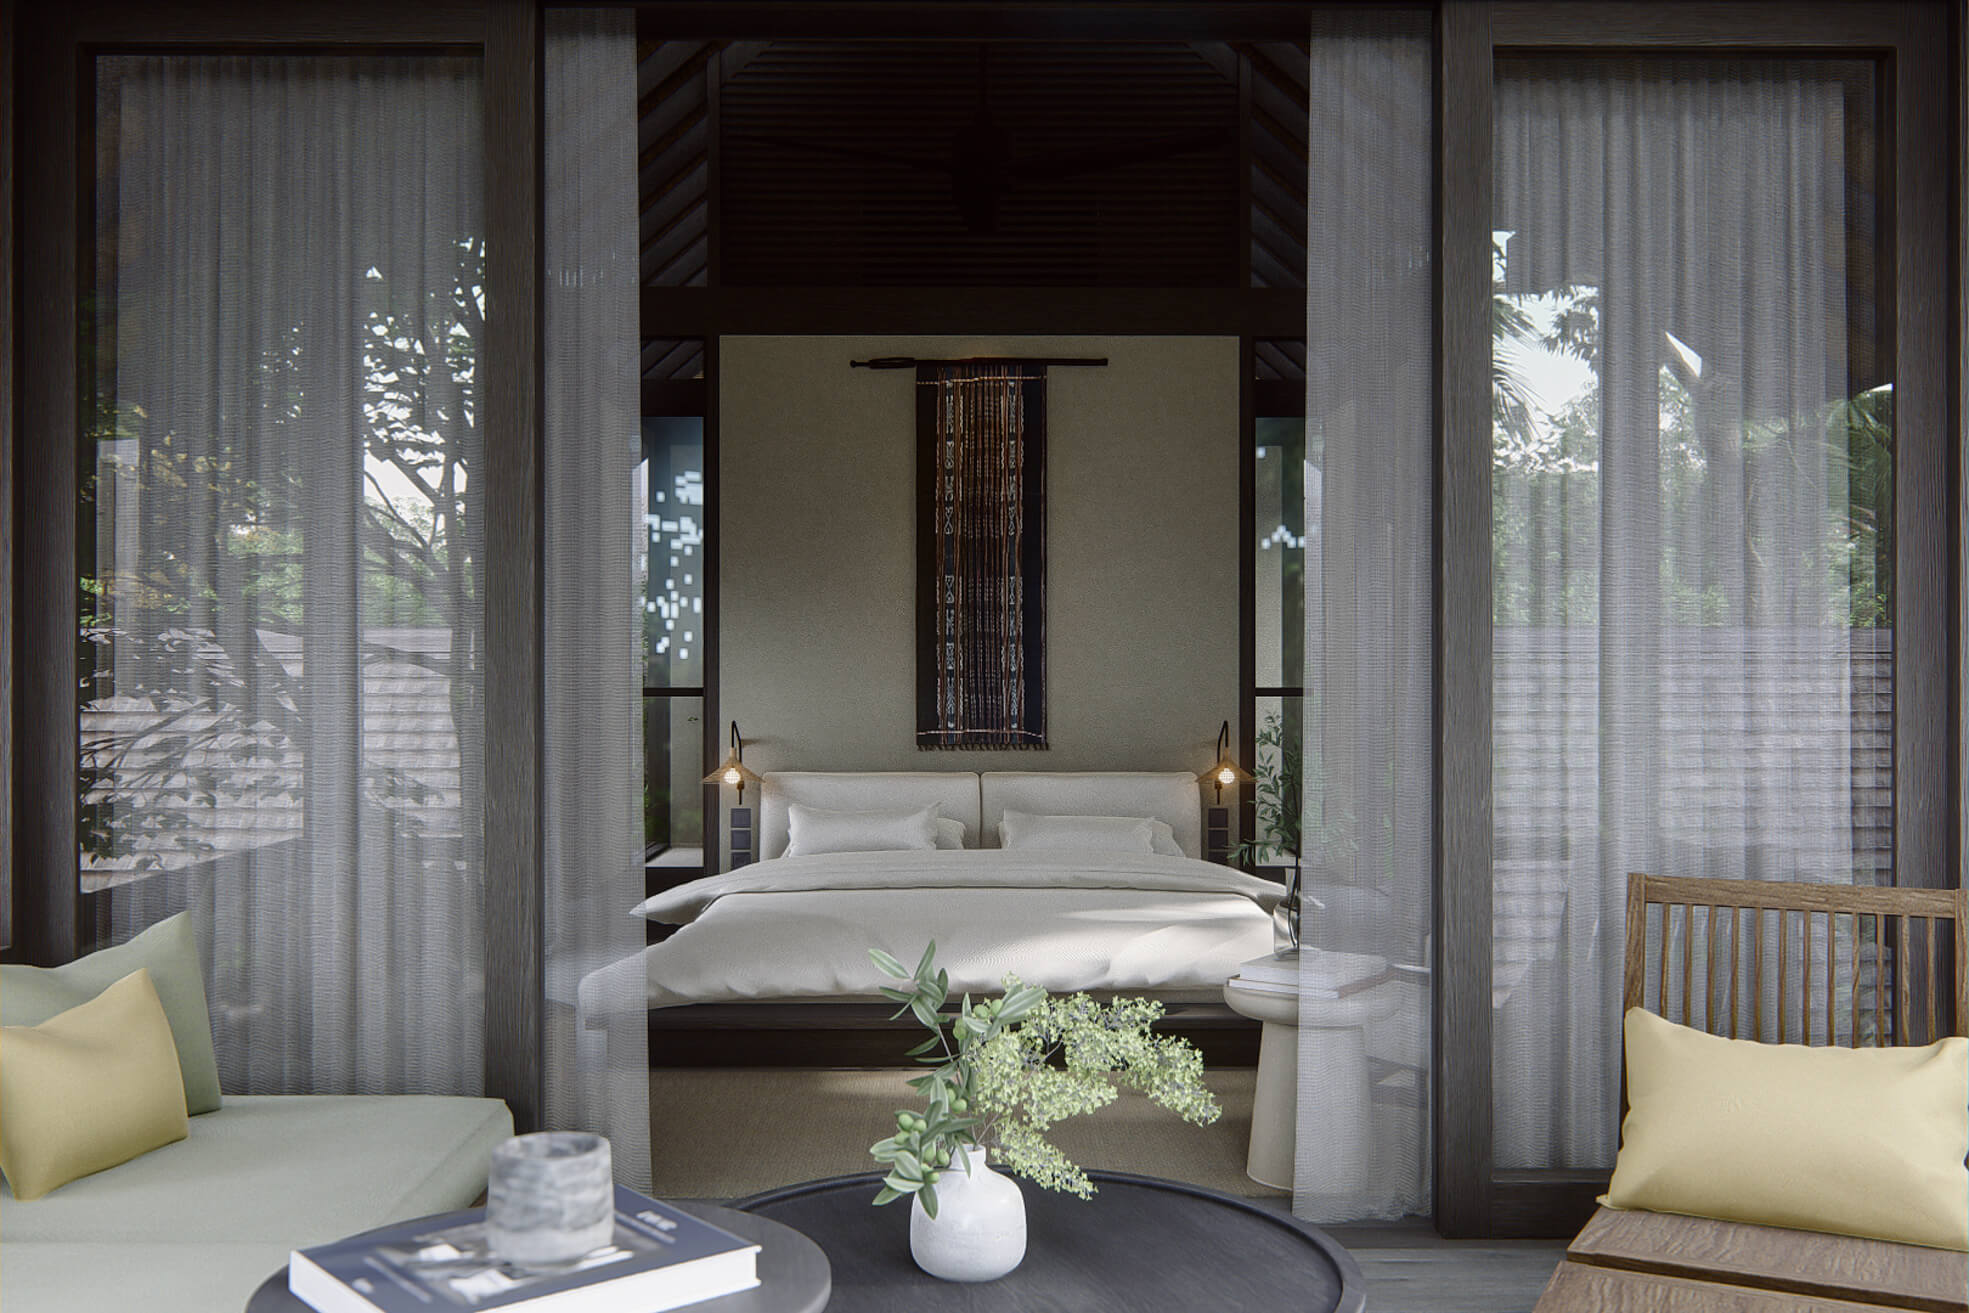 Typical bedroom interior at Villa Nyanyi Bali